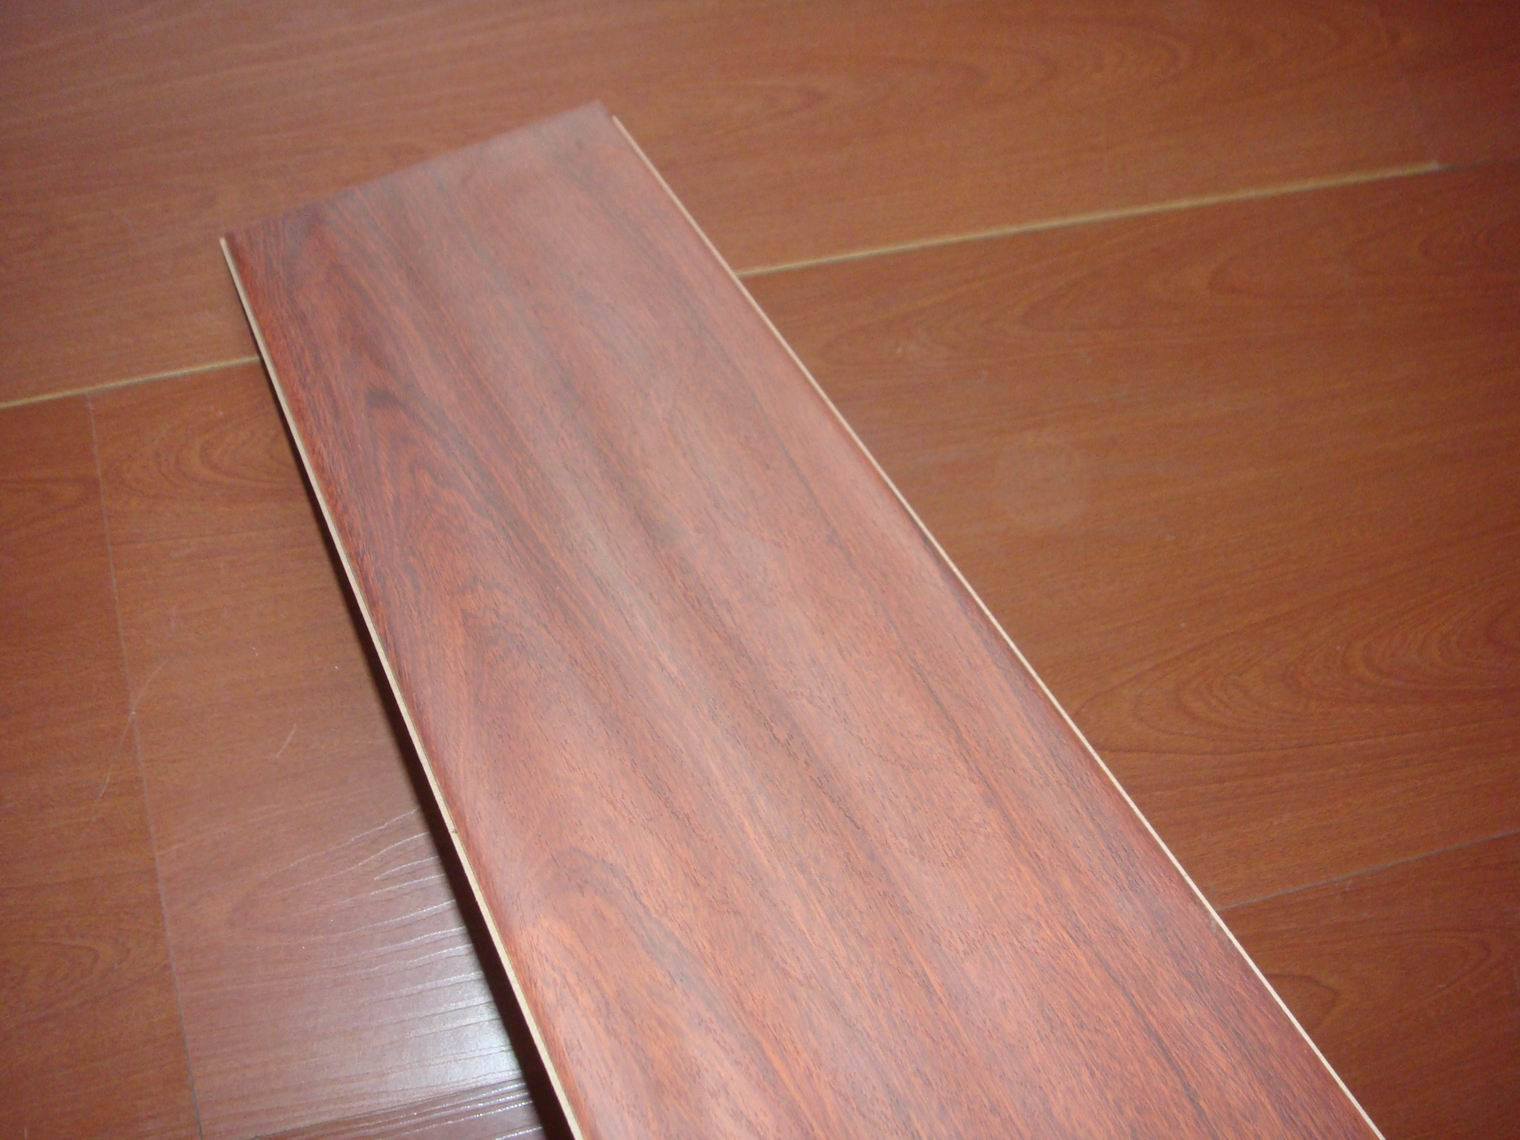 Superior Heat Resistant Flooring Laminate (8mm)